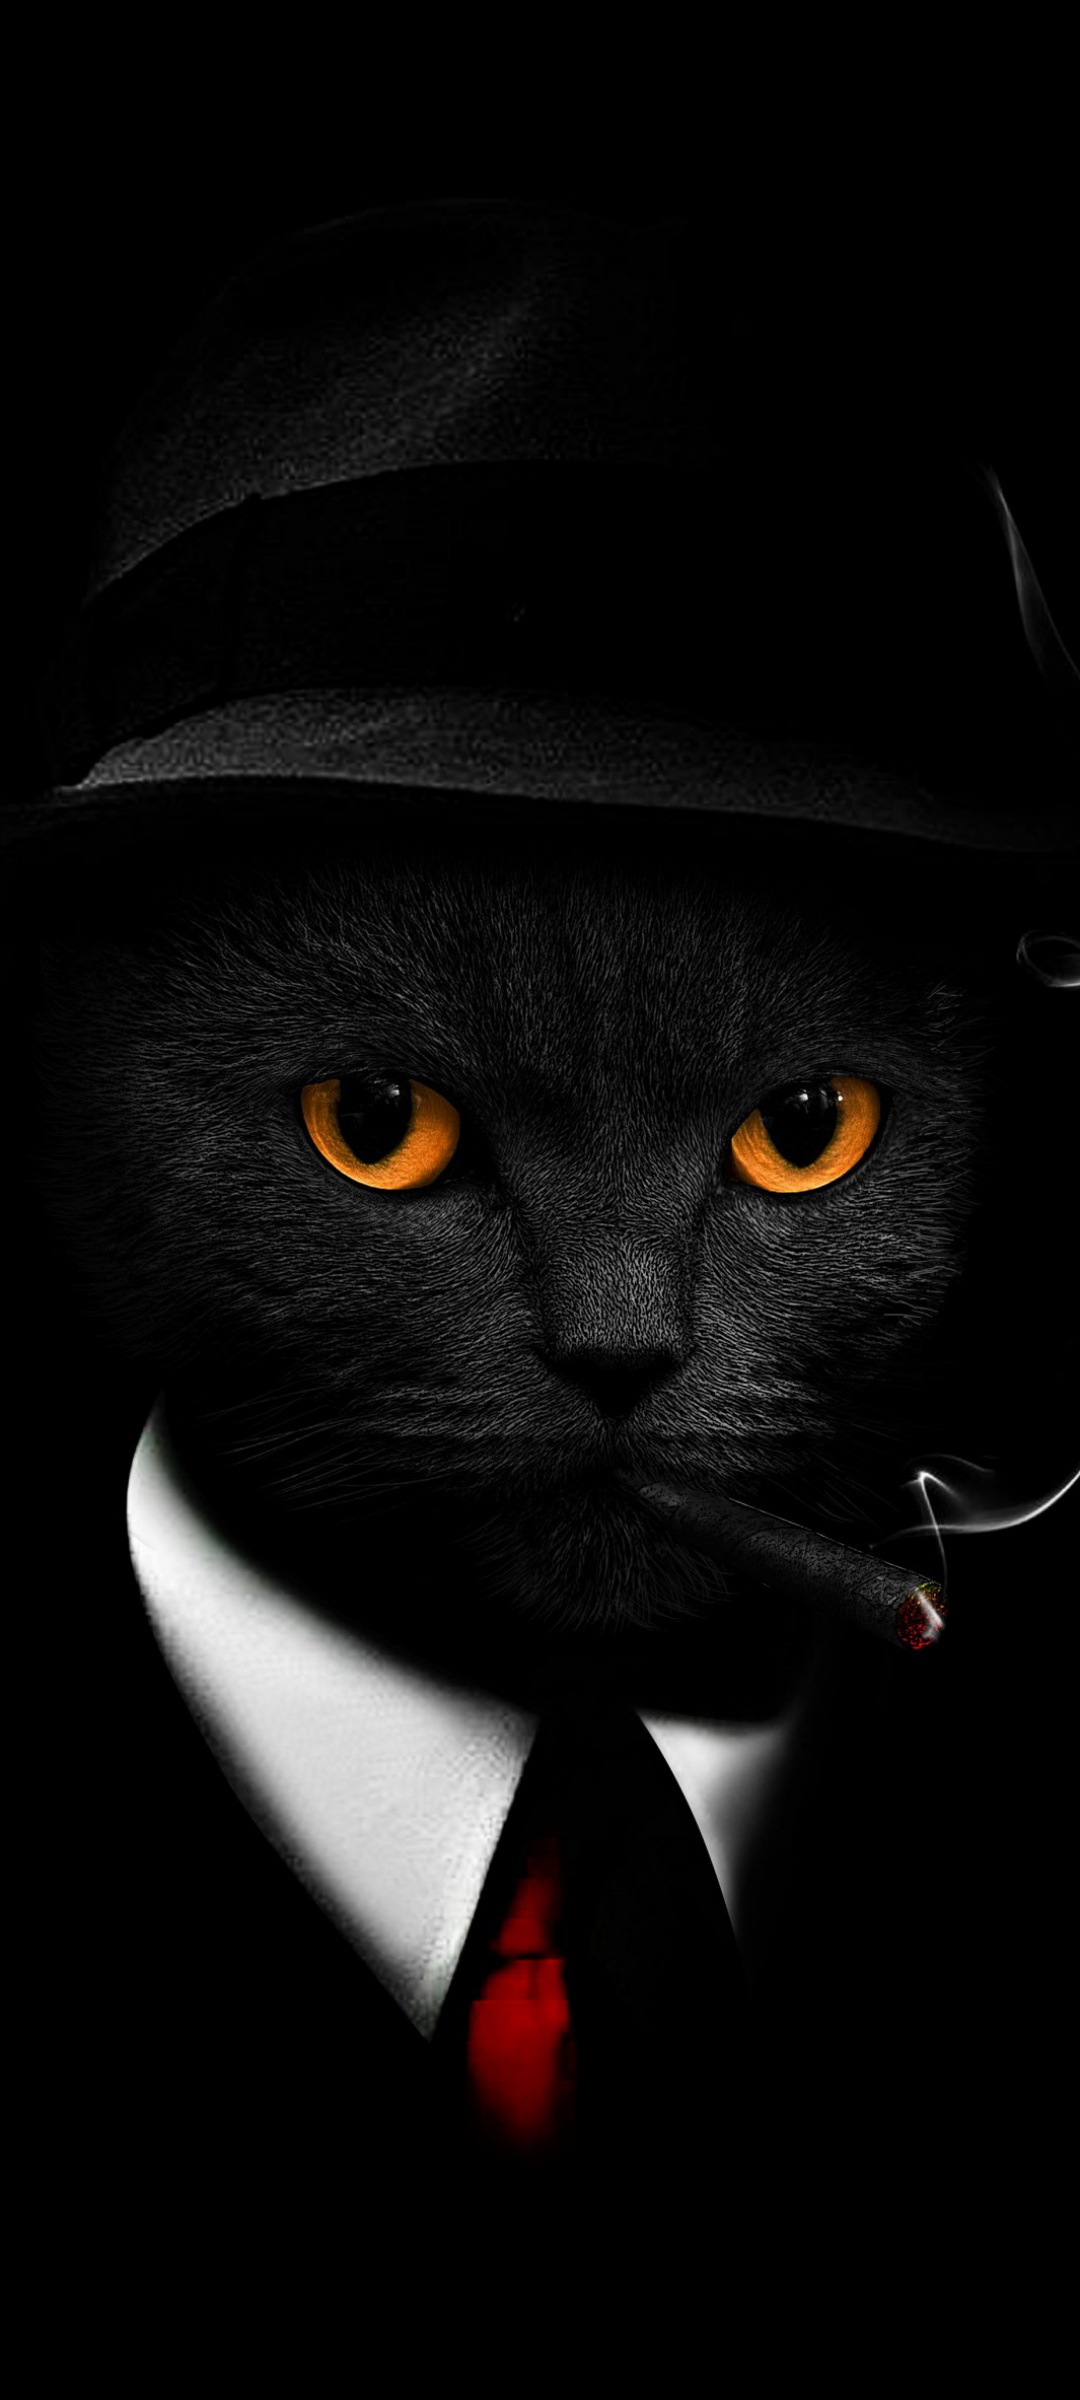 Hình nền mèo đen: Với hình nền mèo đen, bạn sẽ có cơ hội để trang trí màn hình của mình với một hình ảnh độc đáo và dễ thương. Tạo động lực và niềm vui cho mỗi ngày với hình nền mèo đen đáng yêu này. Tải về ngay để trải nghiệm sự độc đáo của hình nền này.